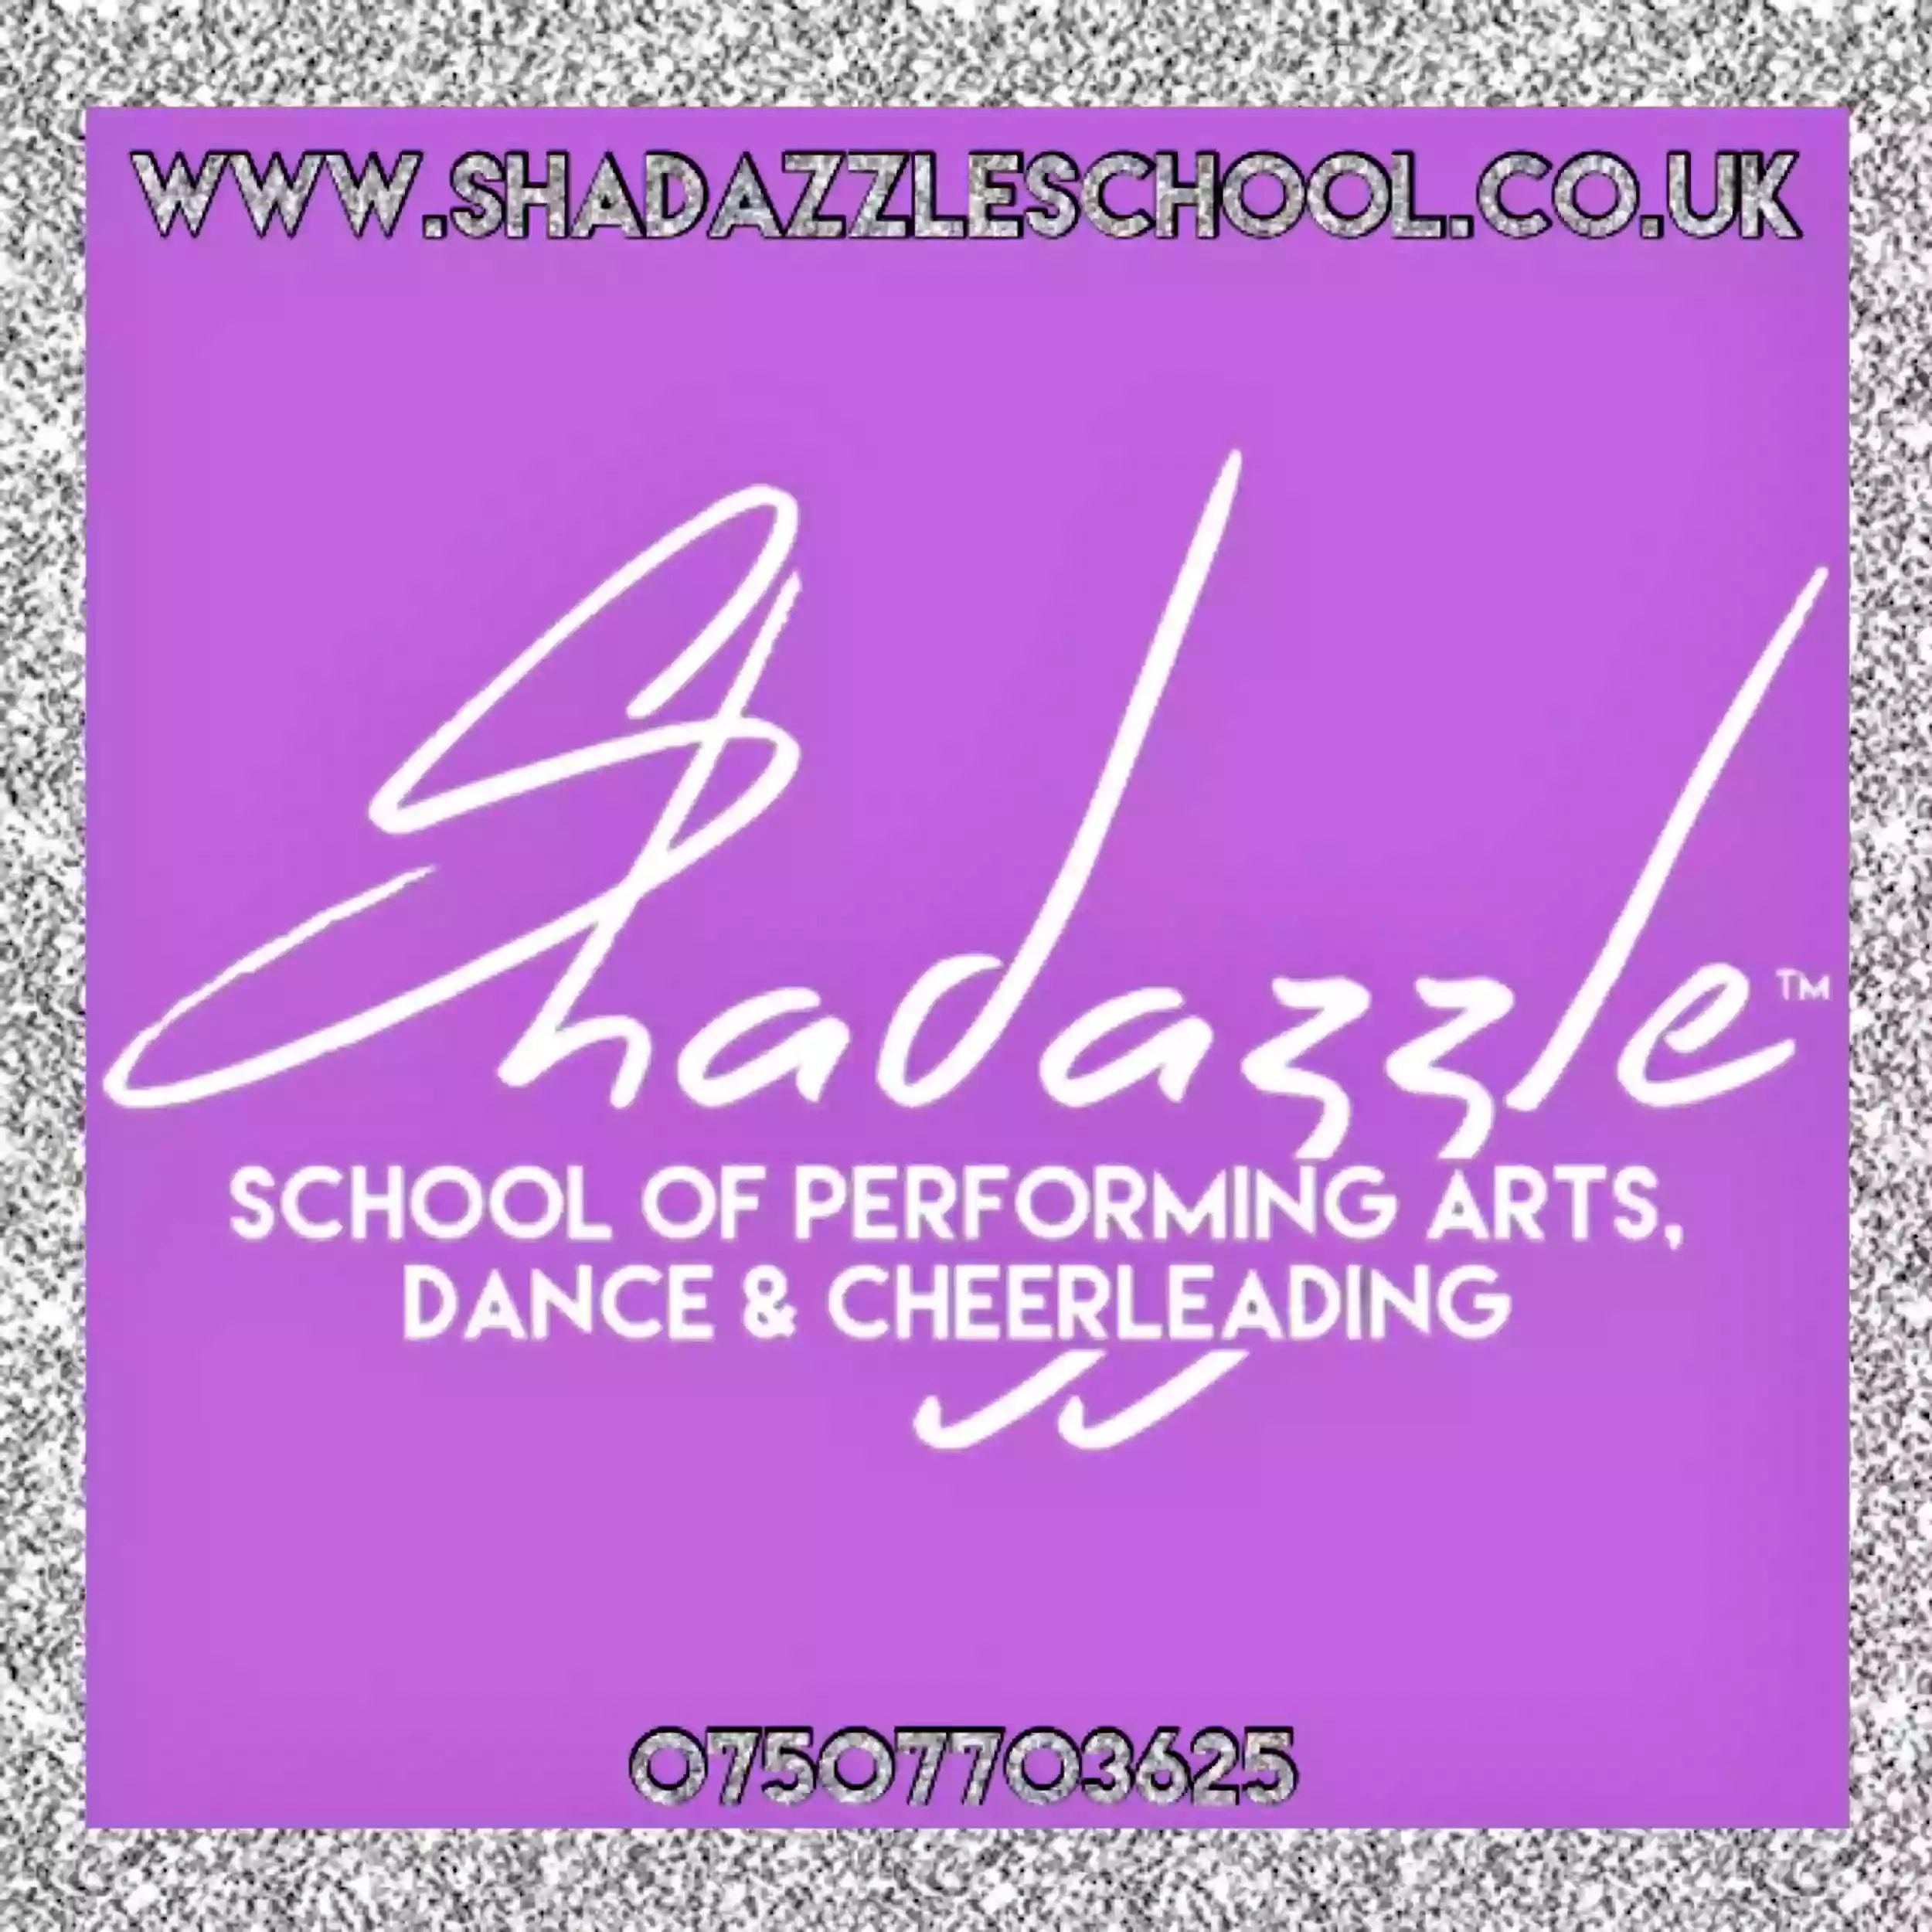 Shhladazzle School of Performing Arts